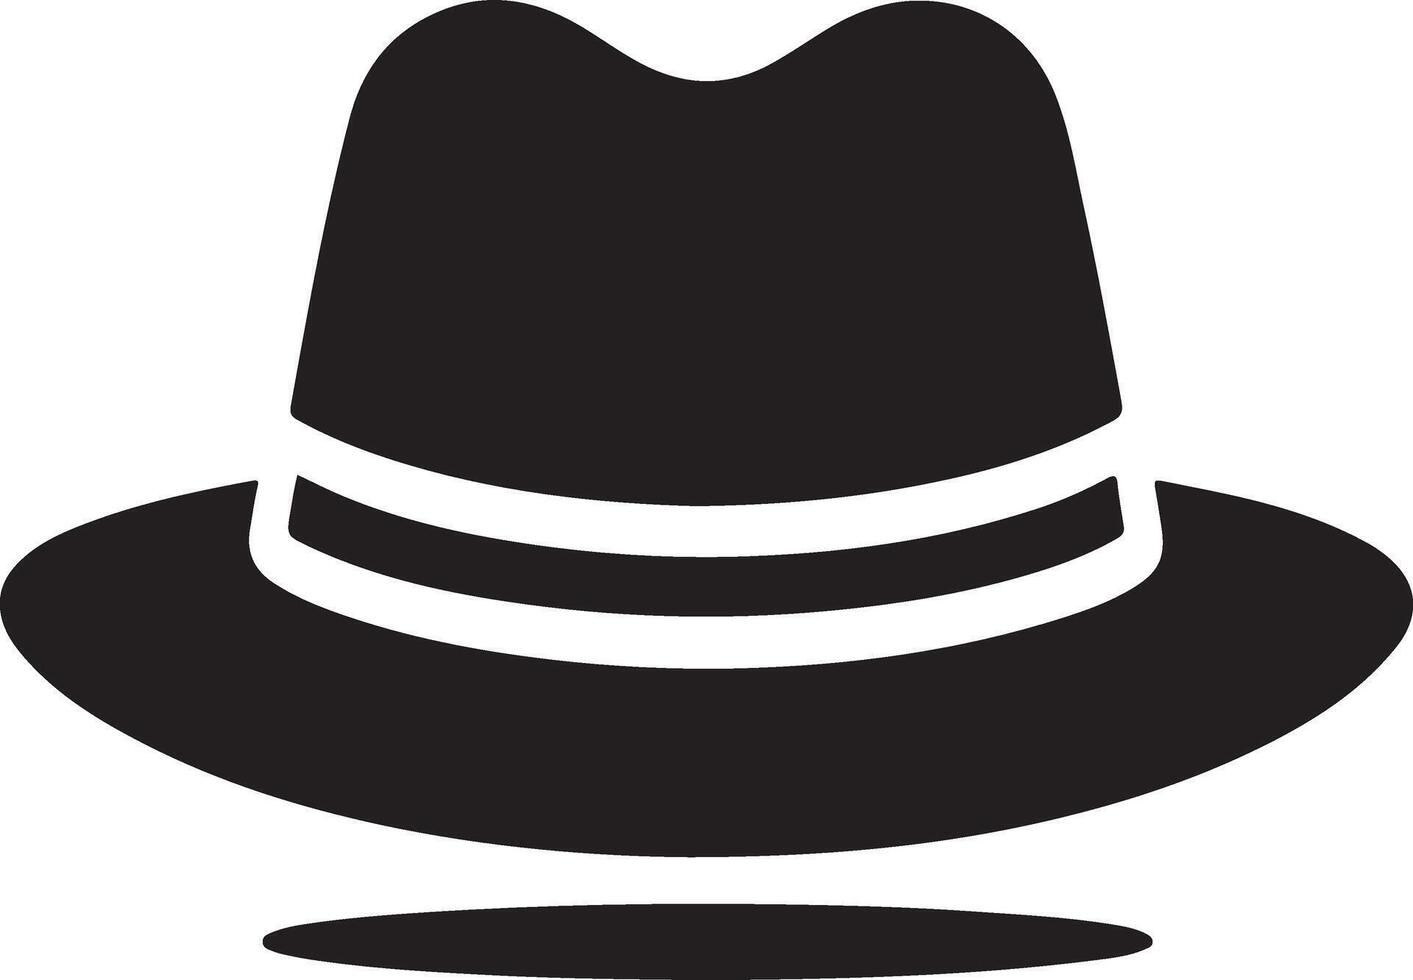 minimal Retro Hat icon, clipart, symbol, black color silhouette 30 vector